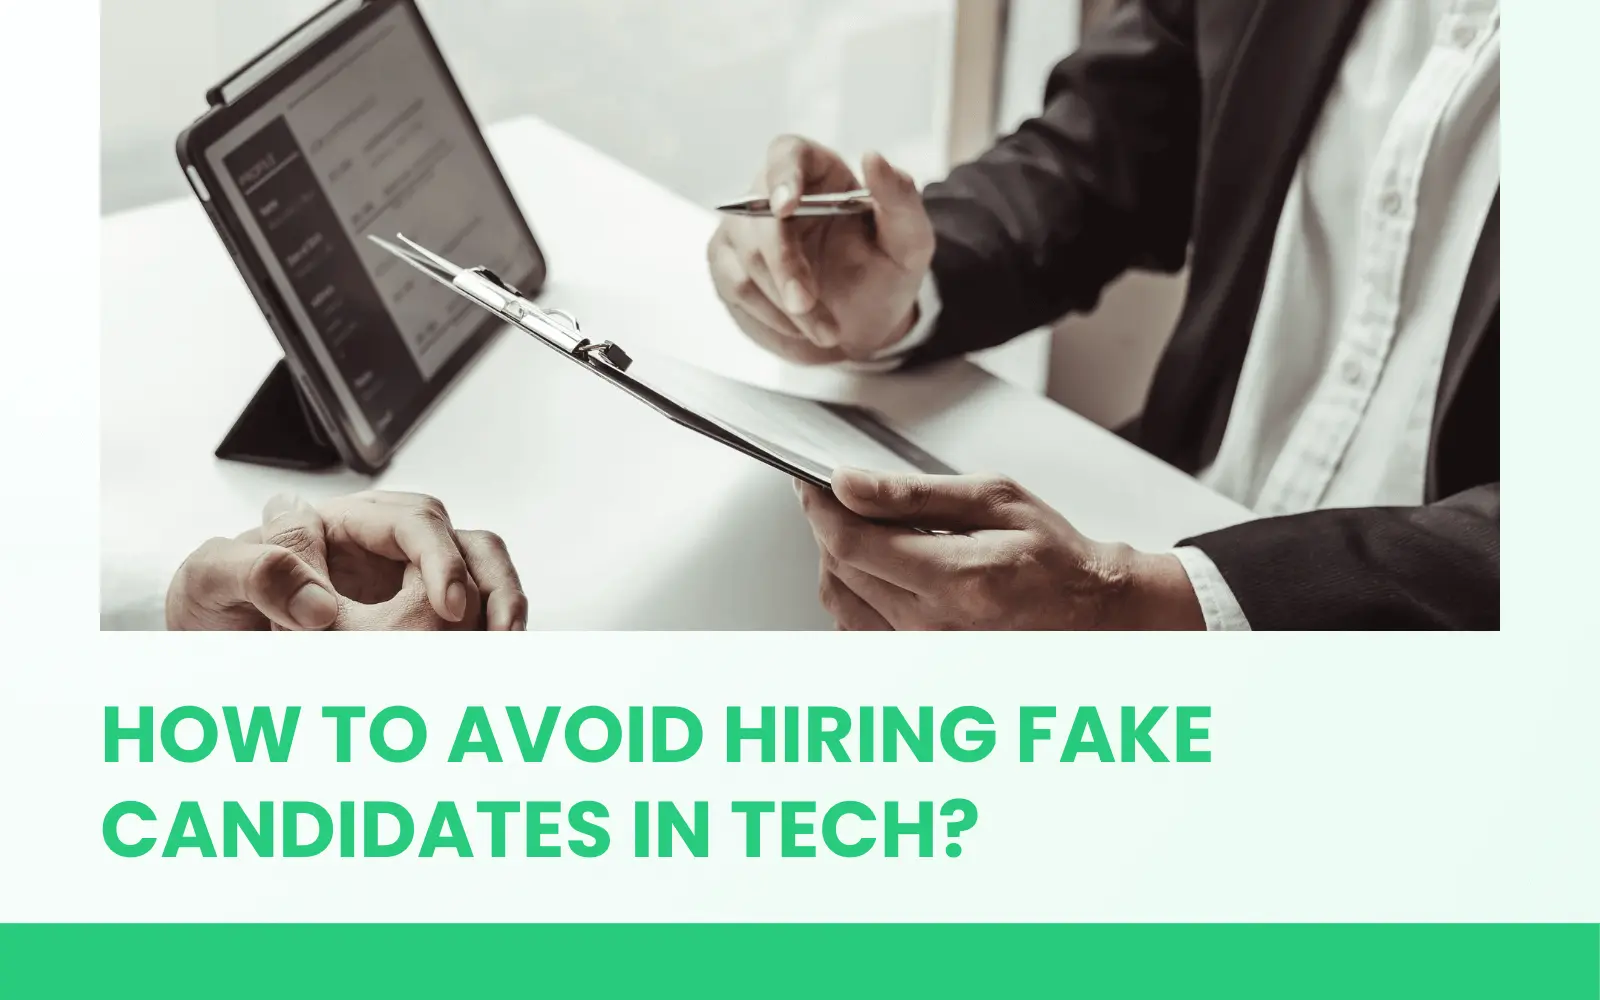 Avoid Hiring Fake Candidates